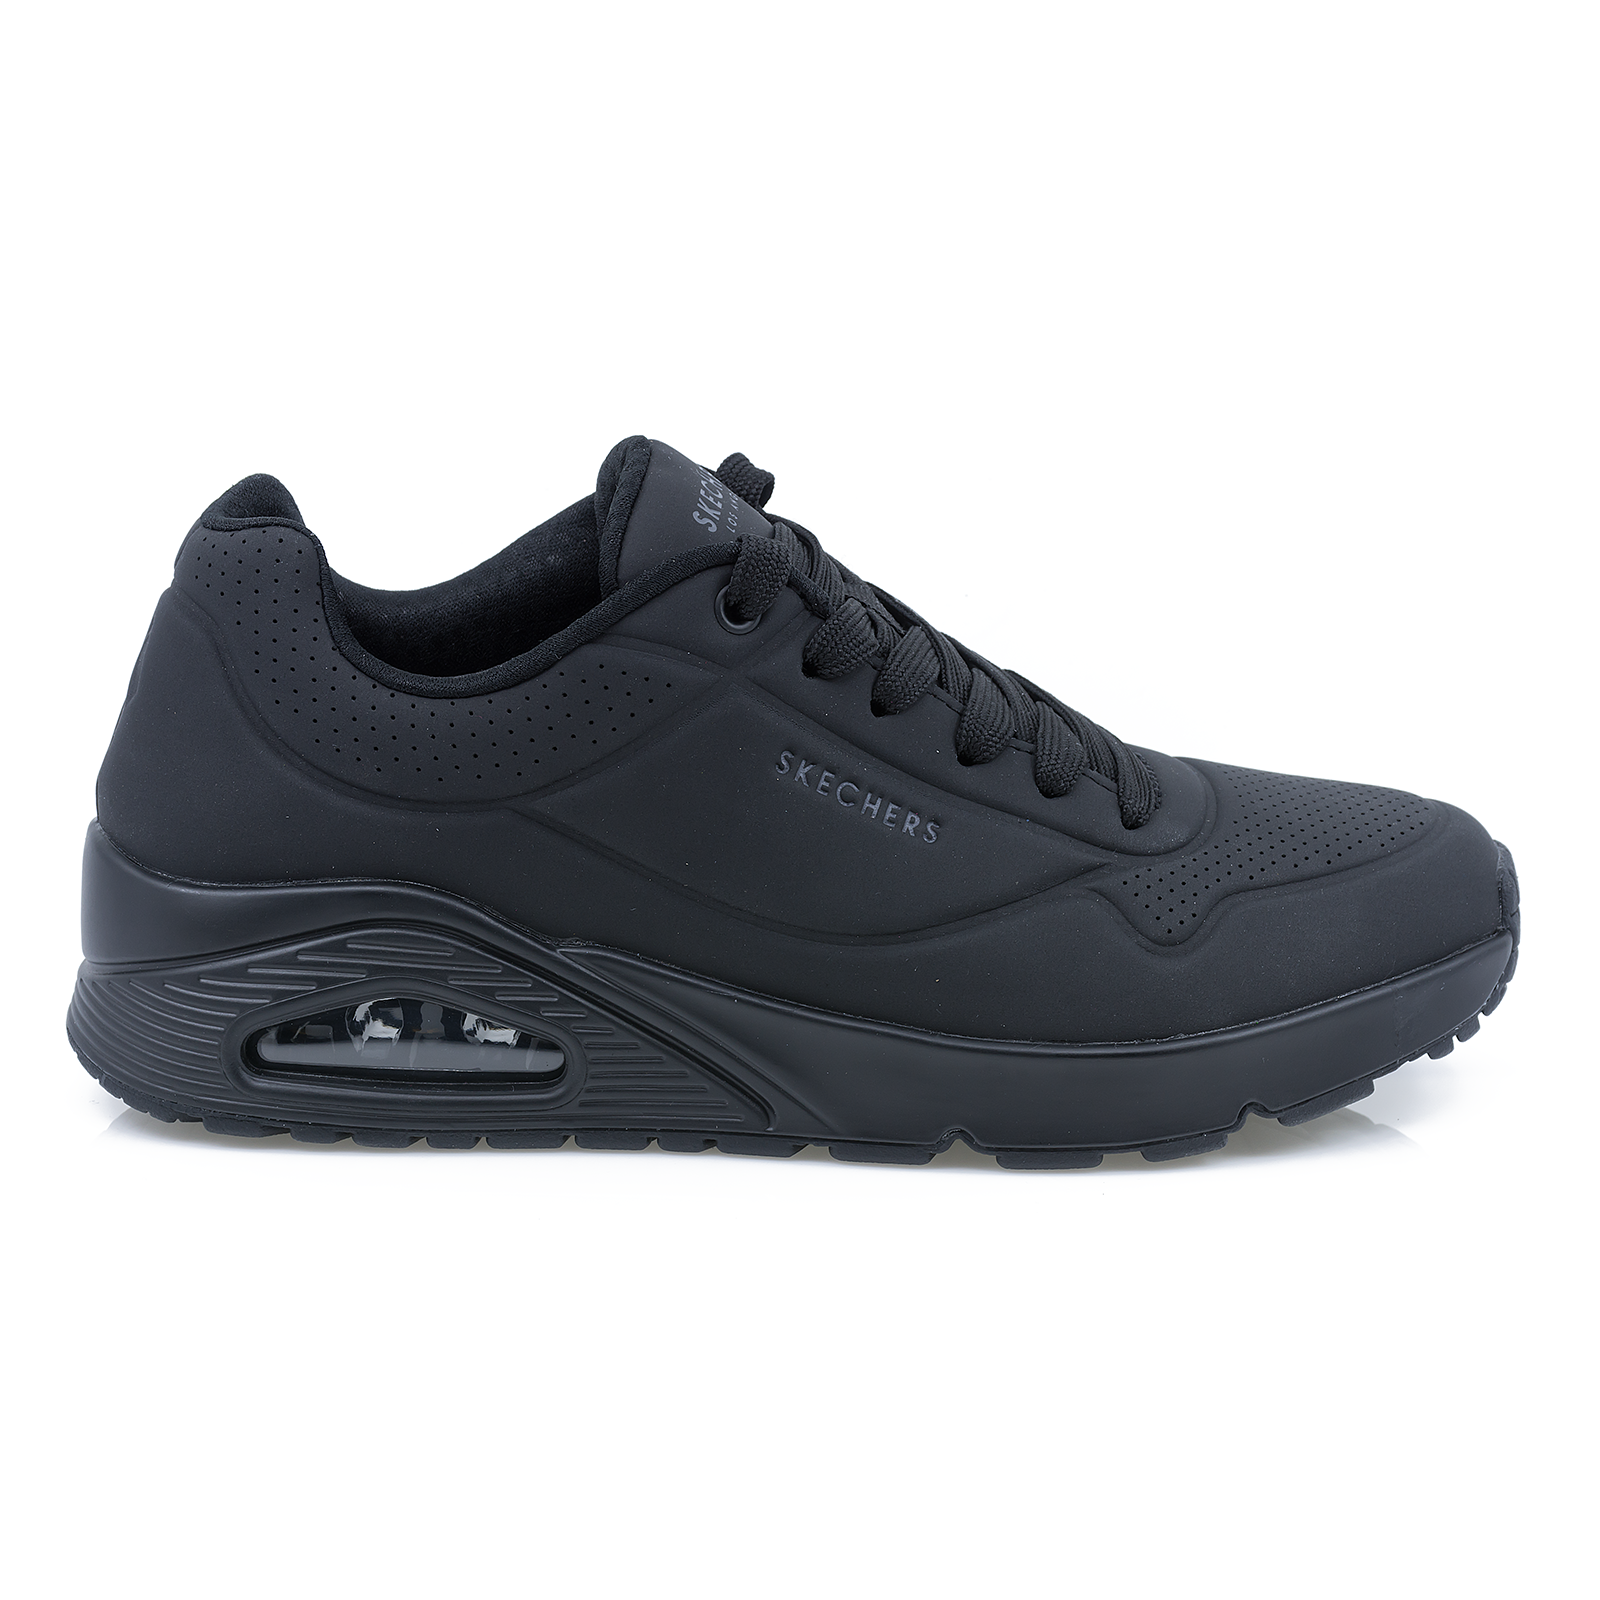 Pantofi-barbati-SKECHERS-SKE-52458-sport-materialsintetic-negru-nouamoda.ro-1